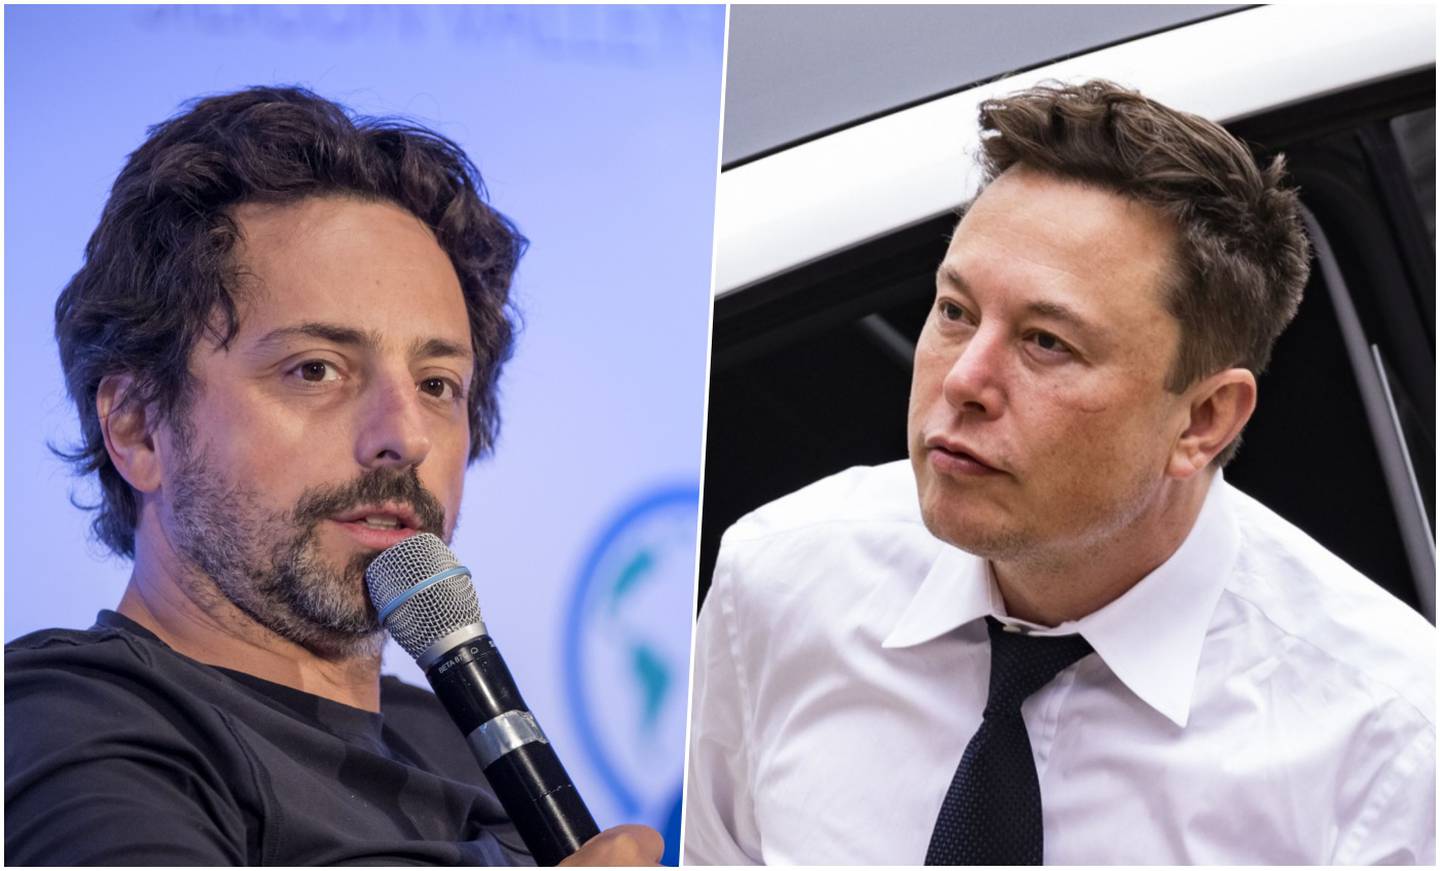 Sergey Brin, cofundador de Google, el buscador más famoso en el mundo, es cercano a Elon Musk y había realizado inversiones en su compañía Tesla.